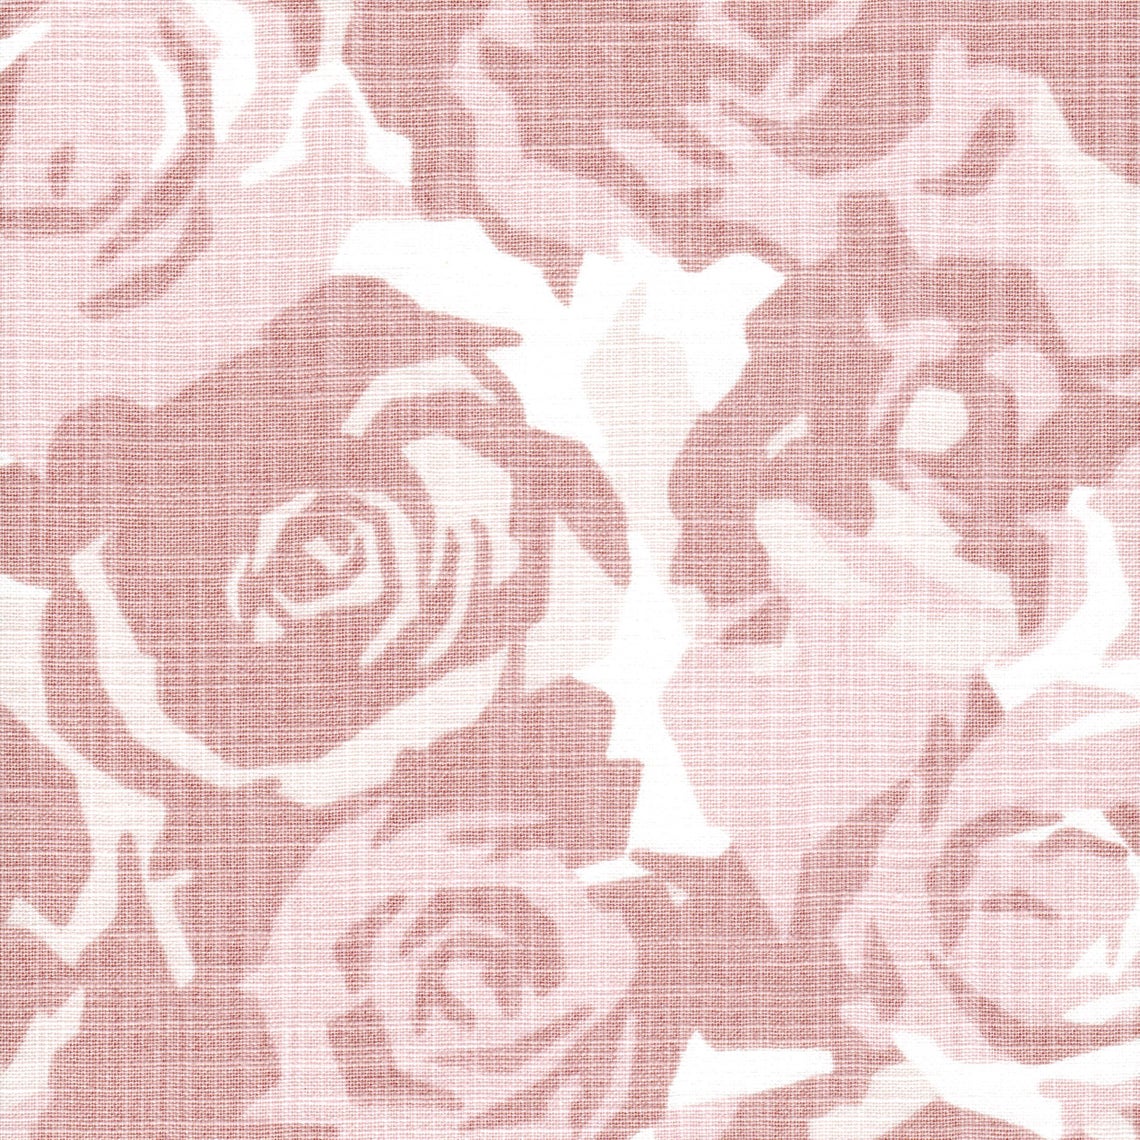 pinch pleated curtain panels pair in farrah blush floral